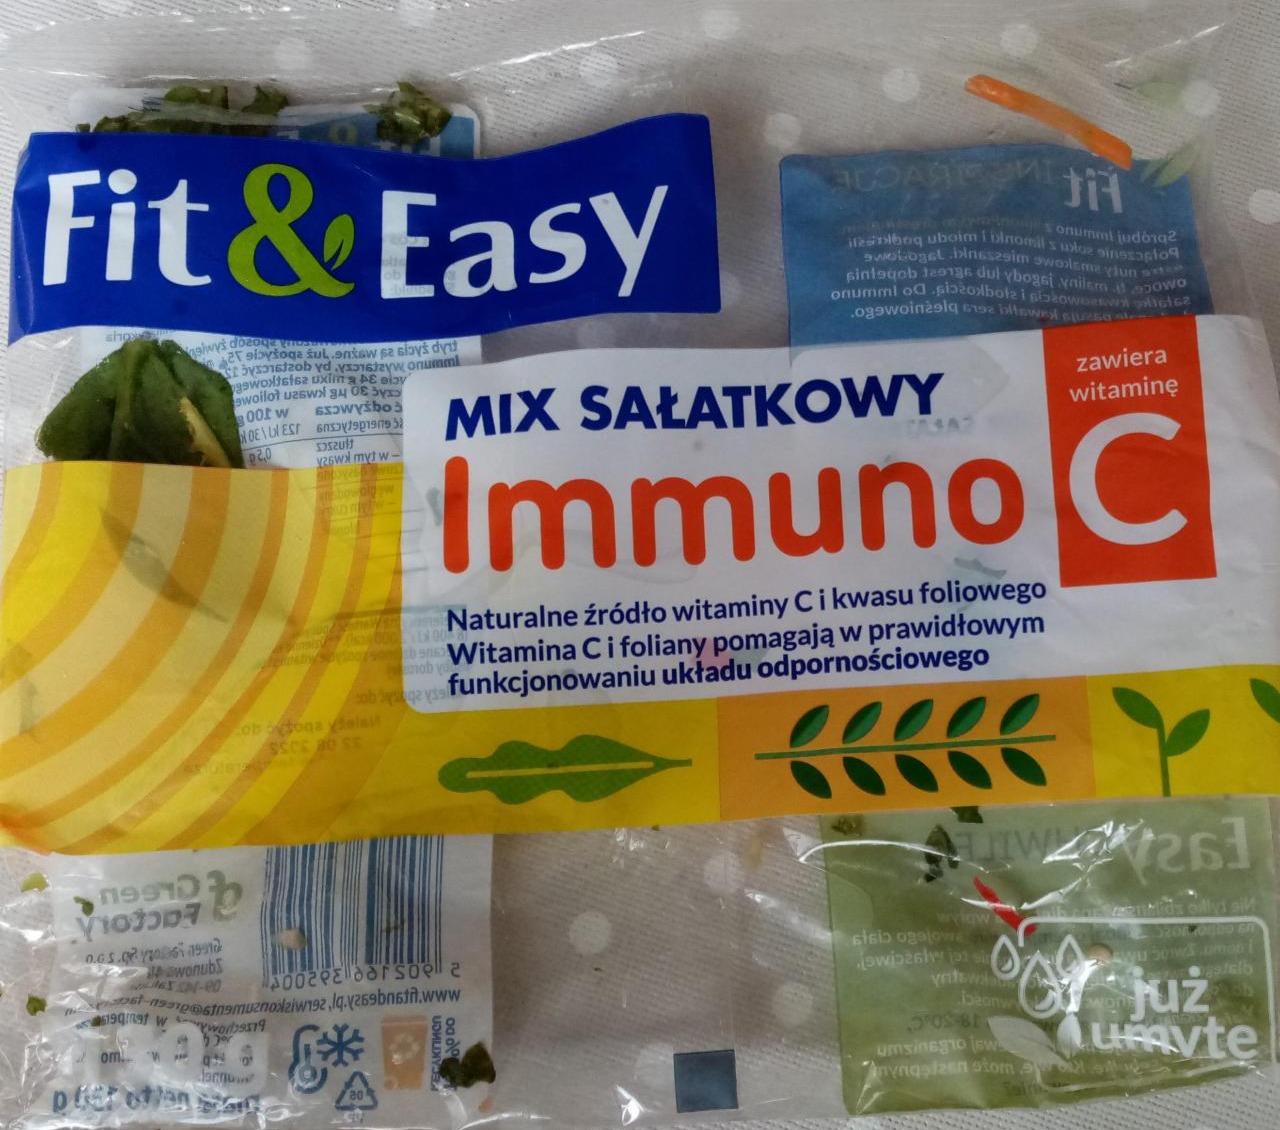 Fotografie - Mix salatkowy immuno C Fit & Easy